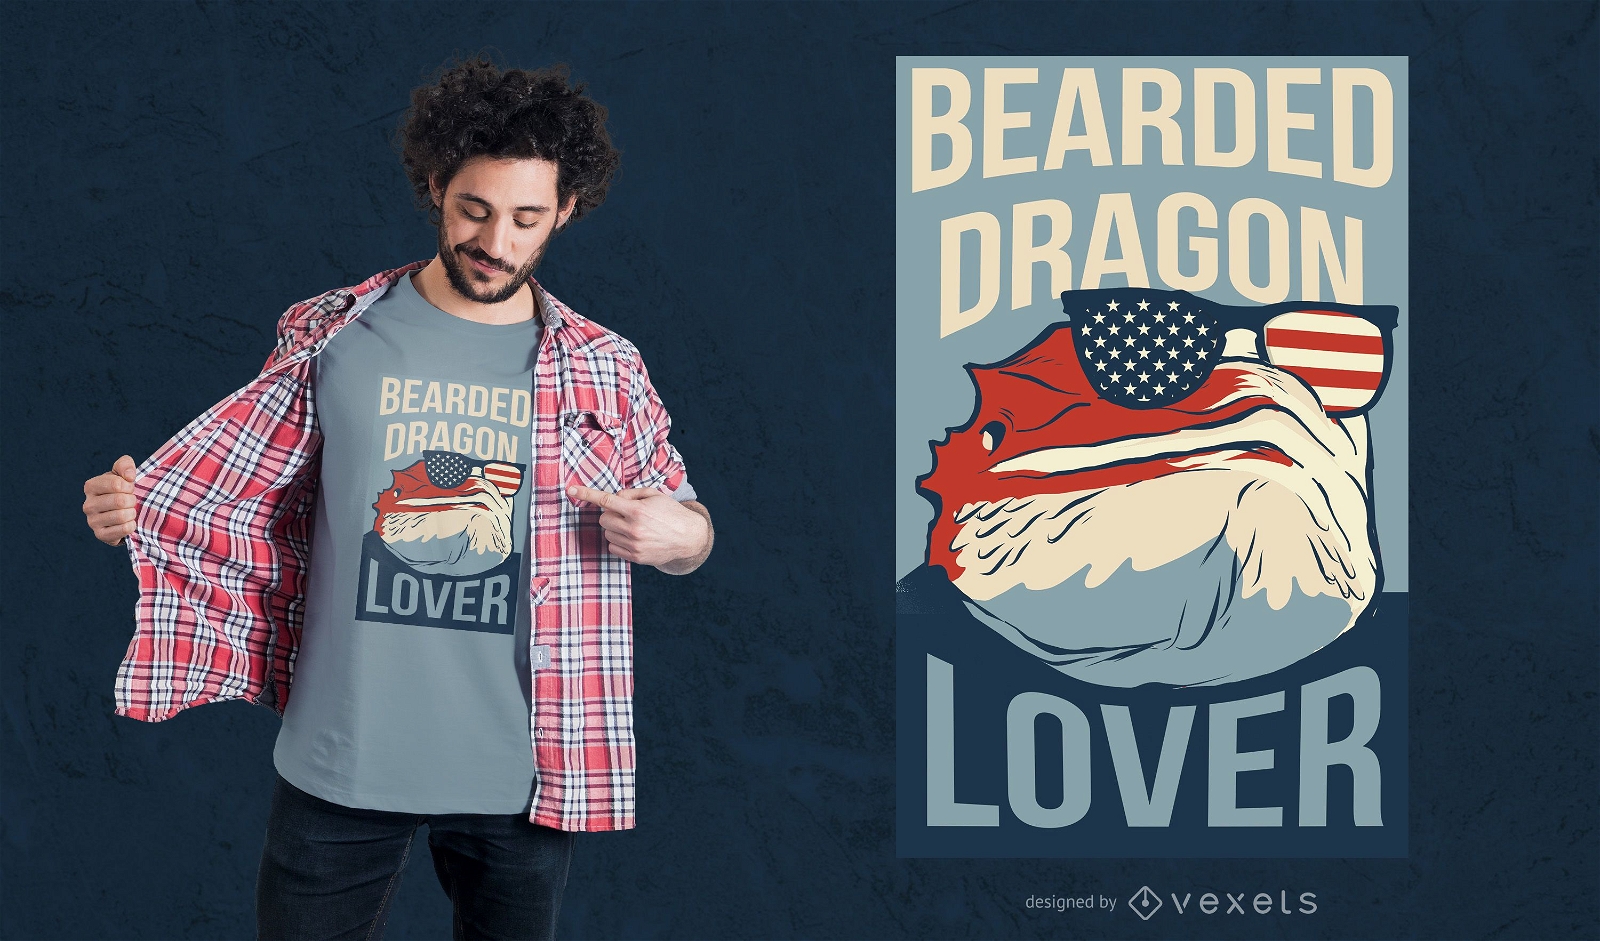 Diseño de camiseta de amante del dragón barbudo.